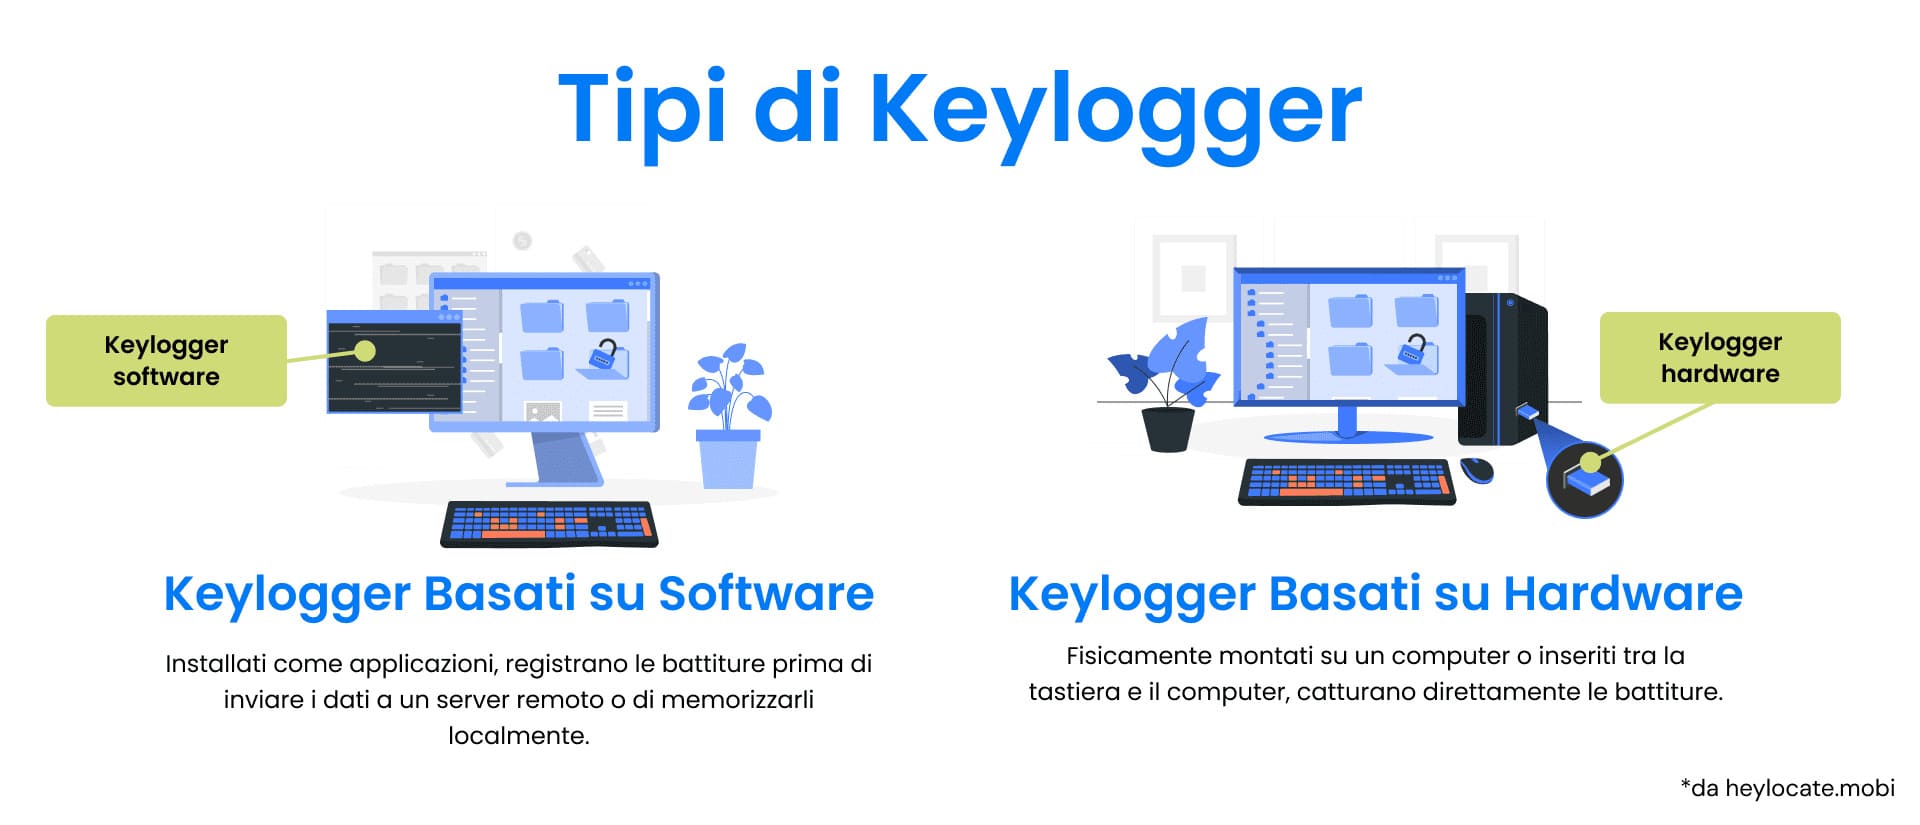 Confronto illustrato tra keylogger basati su software e keylogger basati su hardware, con indicazione delle loro modalità di funzionamento.